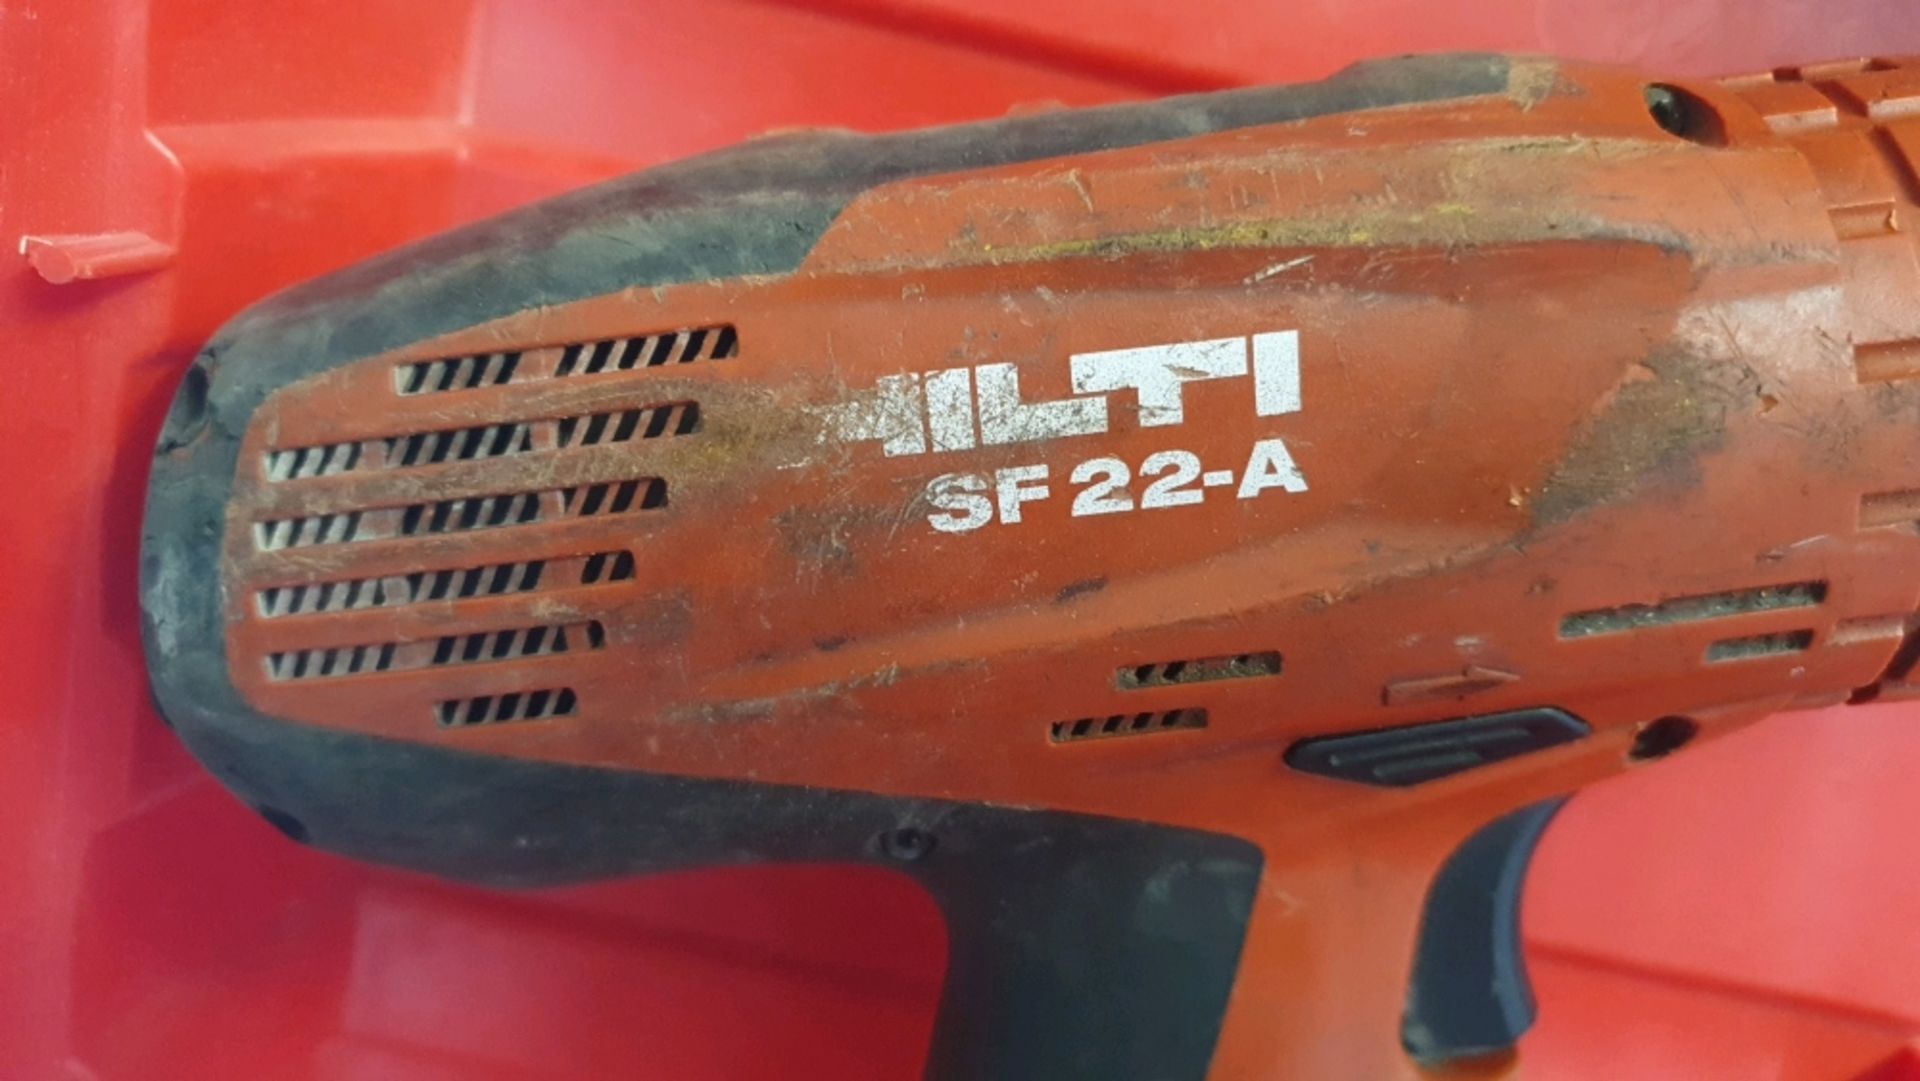 Hilti SF 22-A Drill Driver - Image 4 of 6